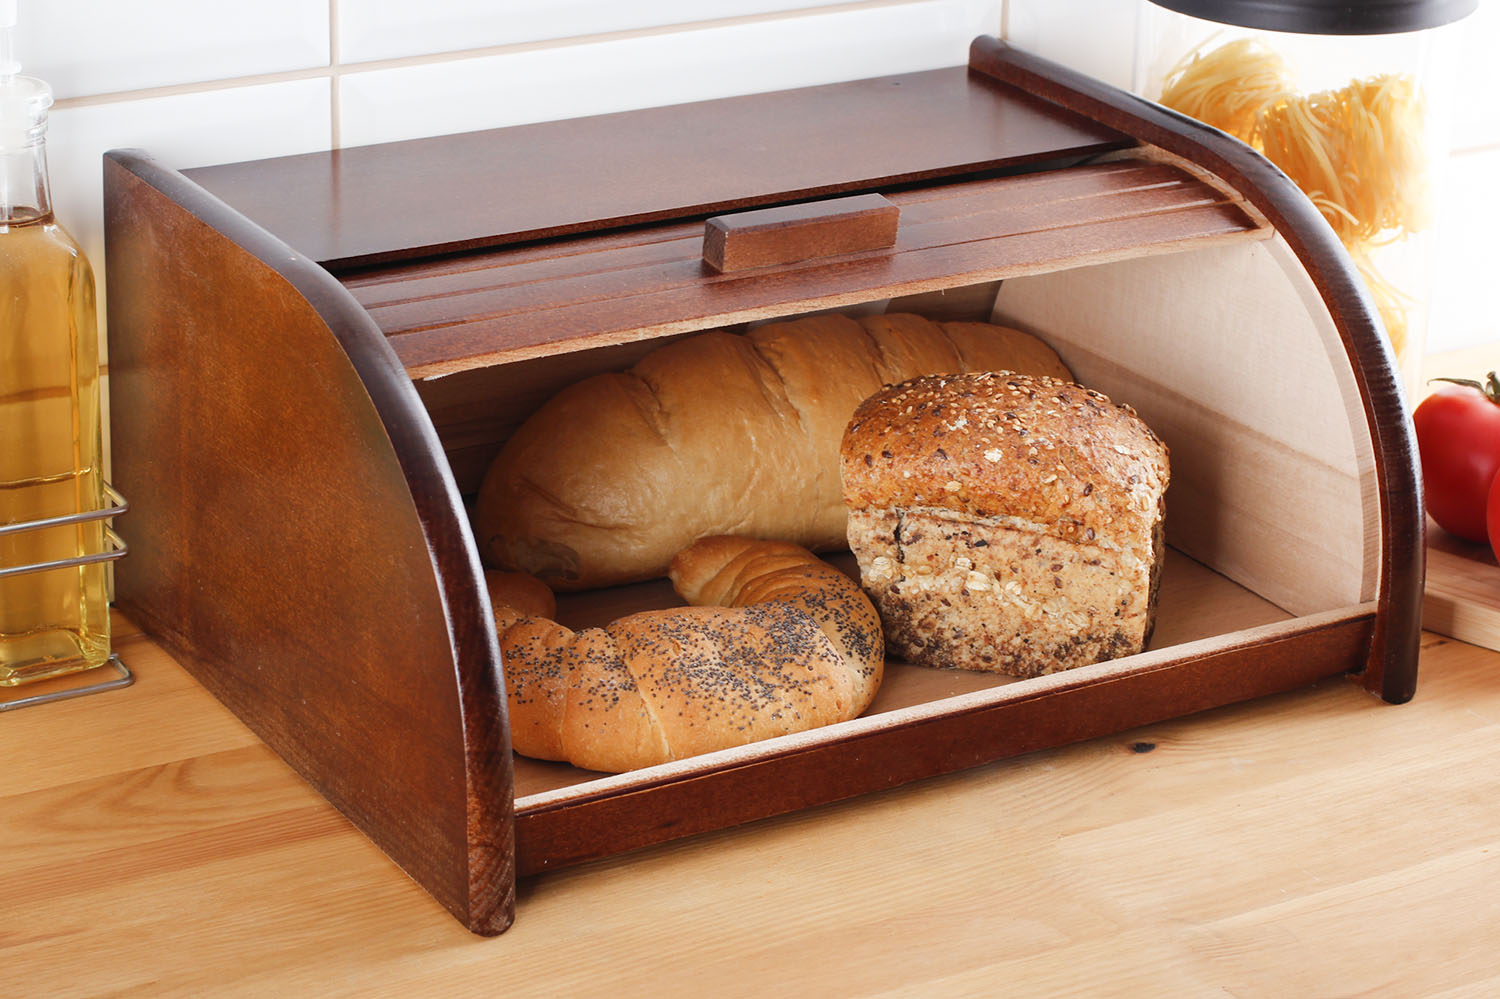 Срок годности хлеба: можно ли хранить в холодильнике, как правильно и почему?